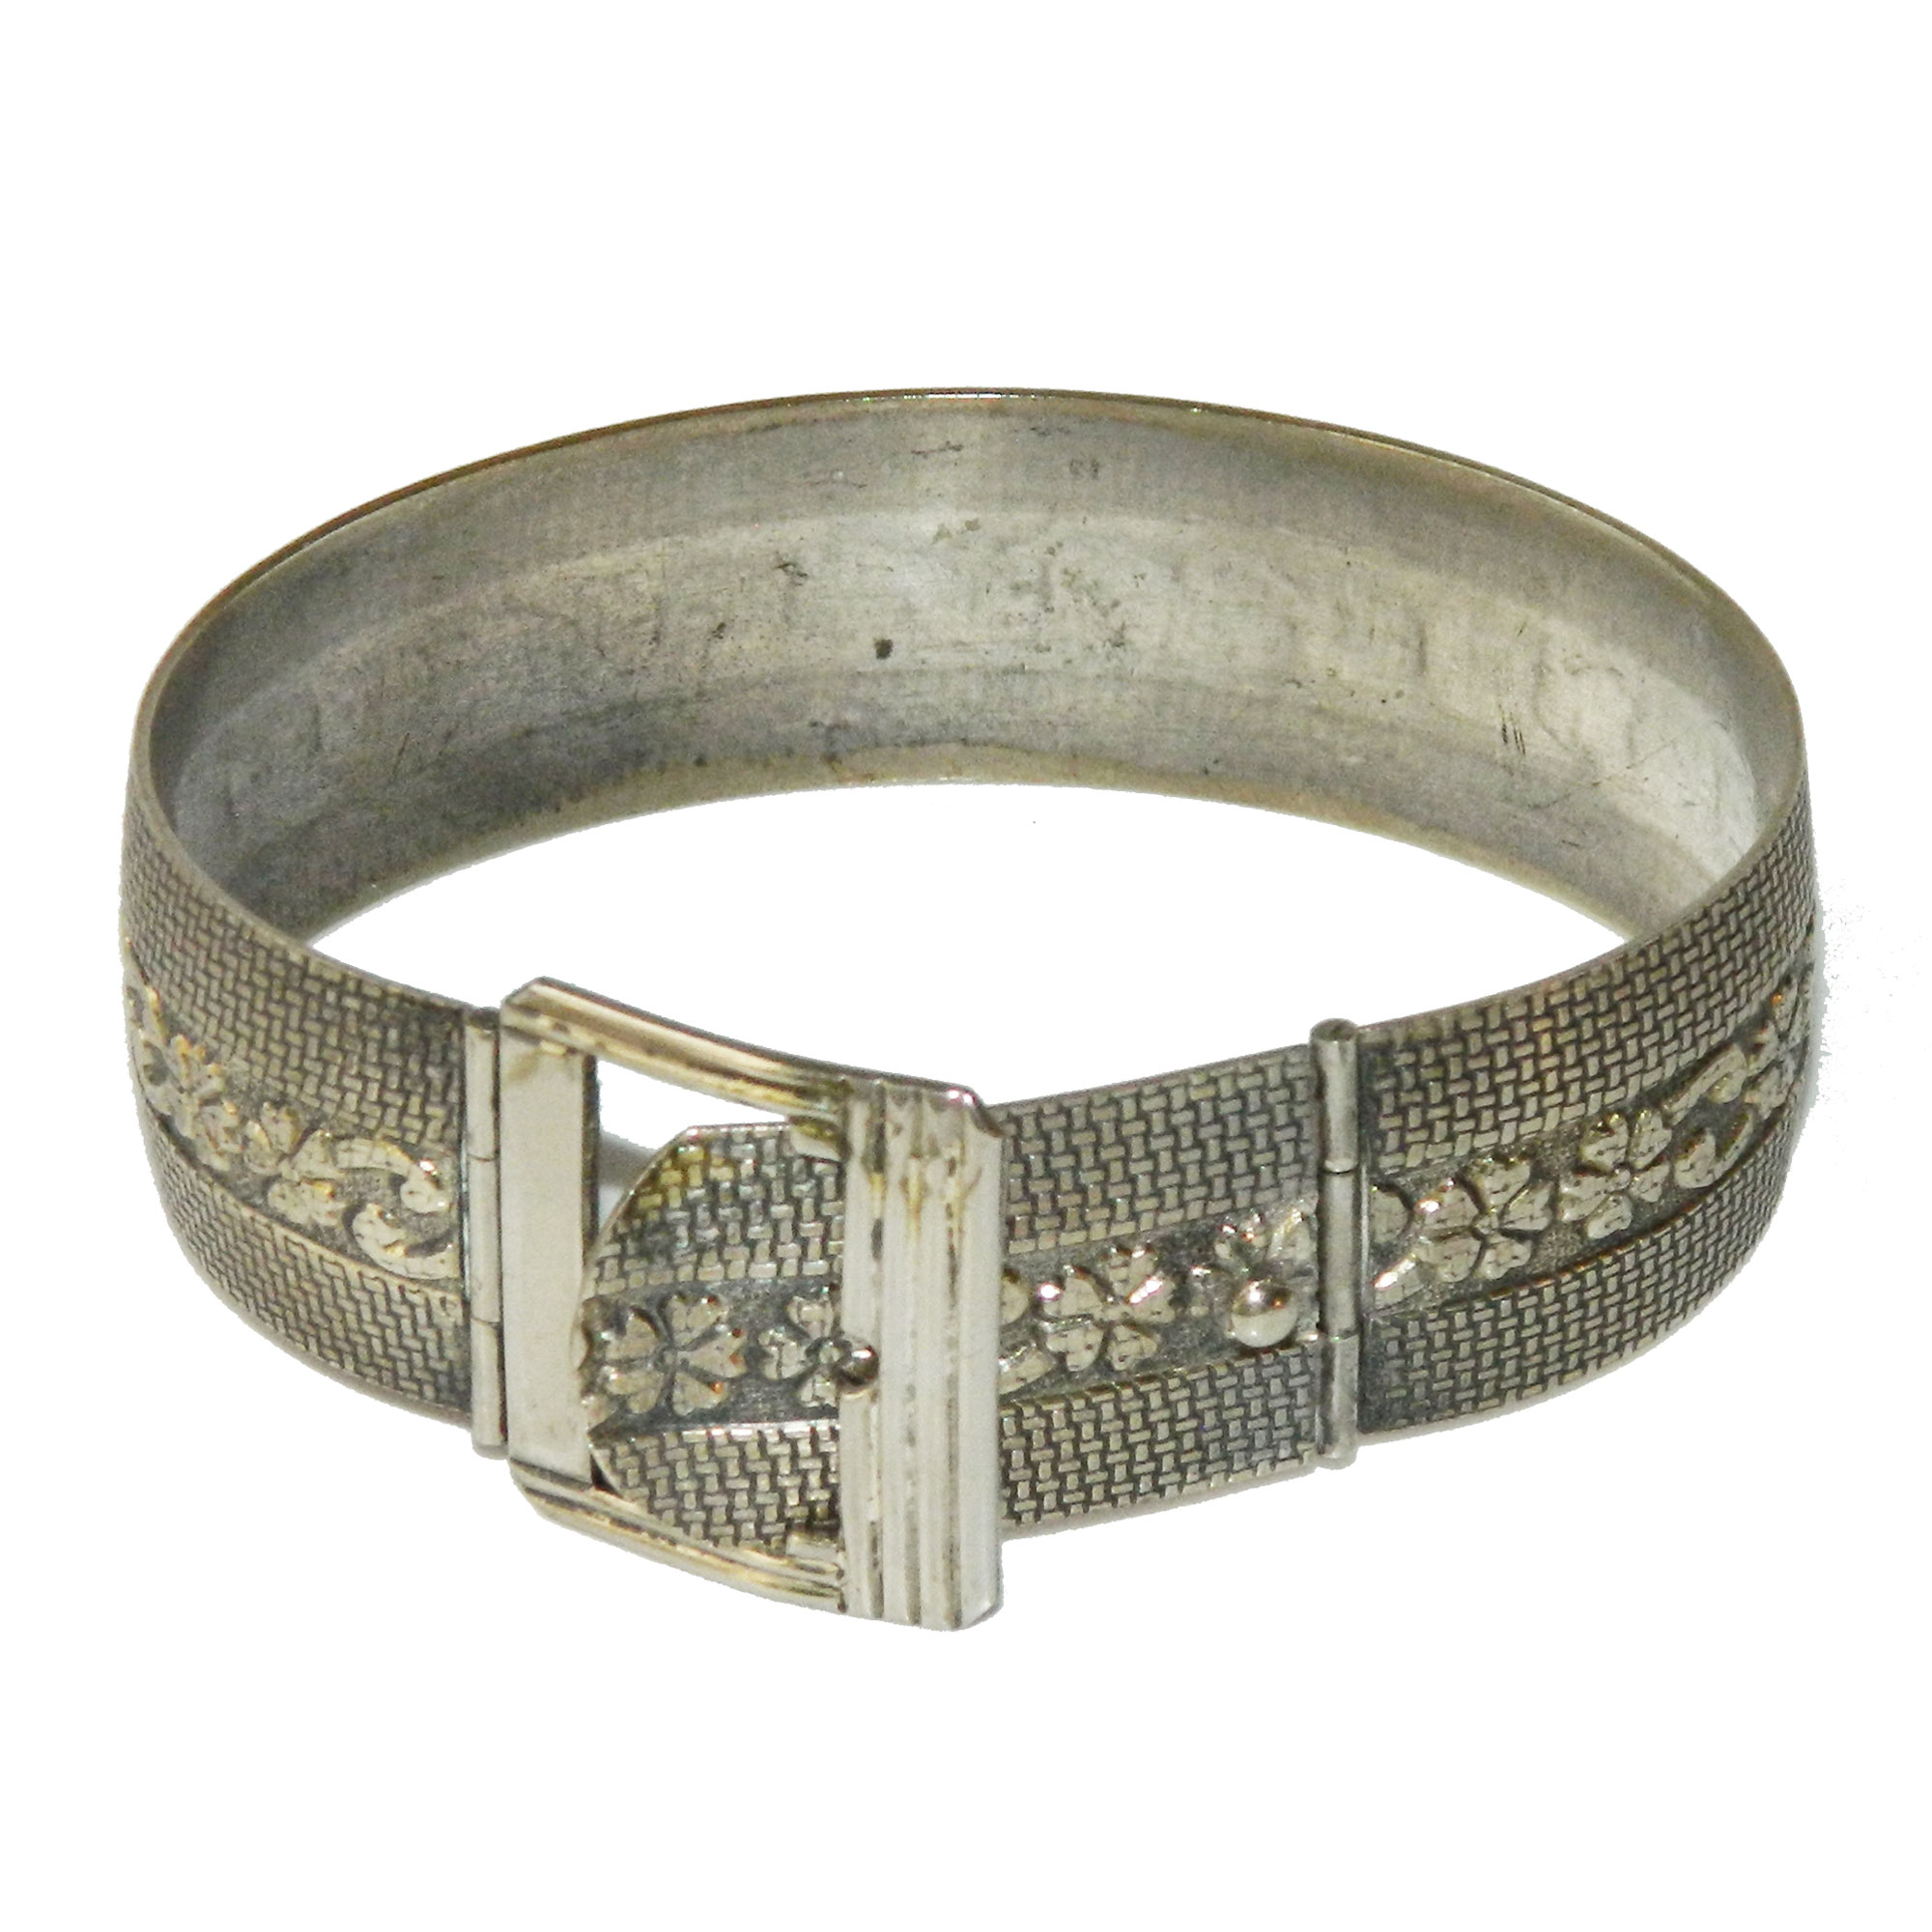 Belt buckle bangle bracelet